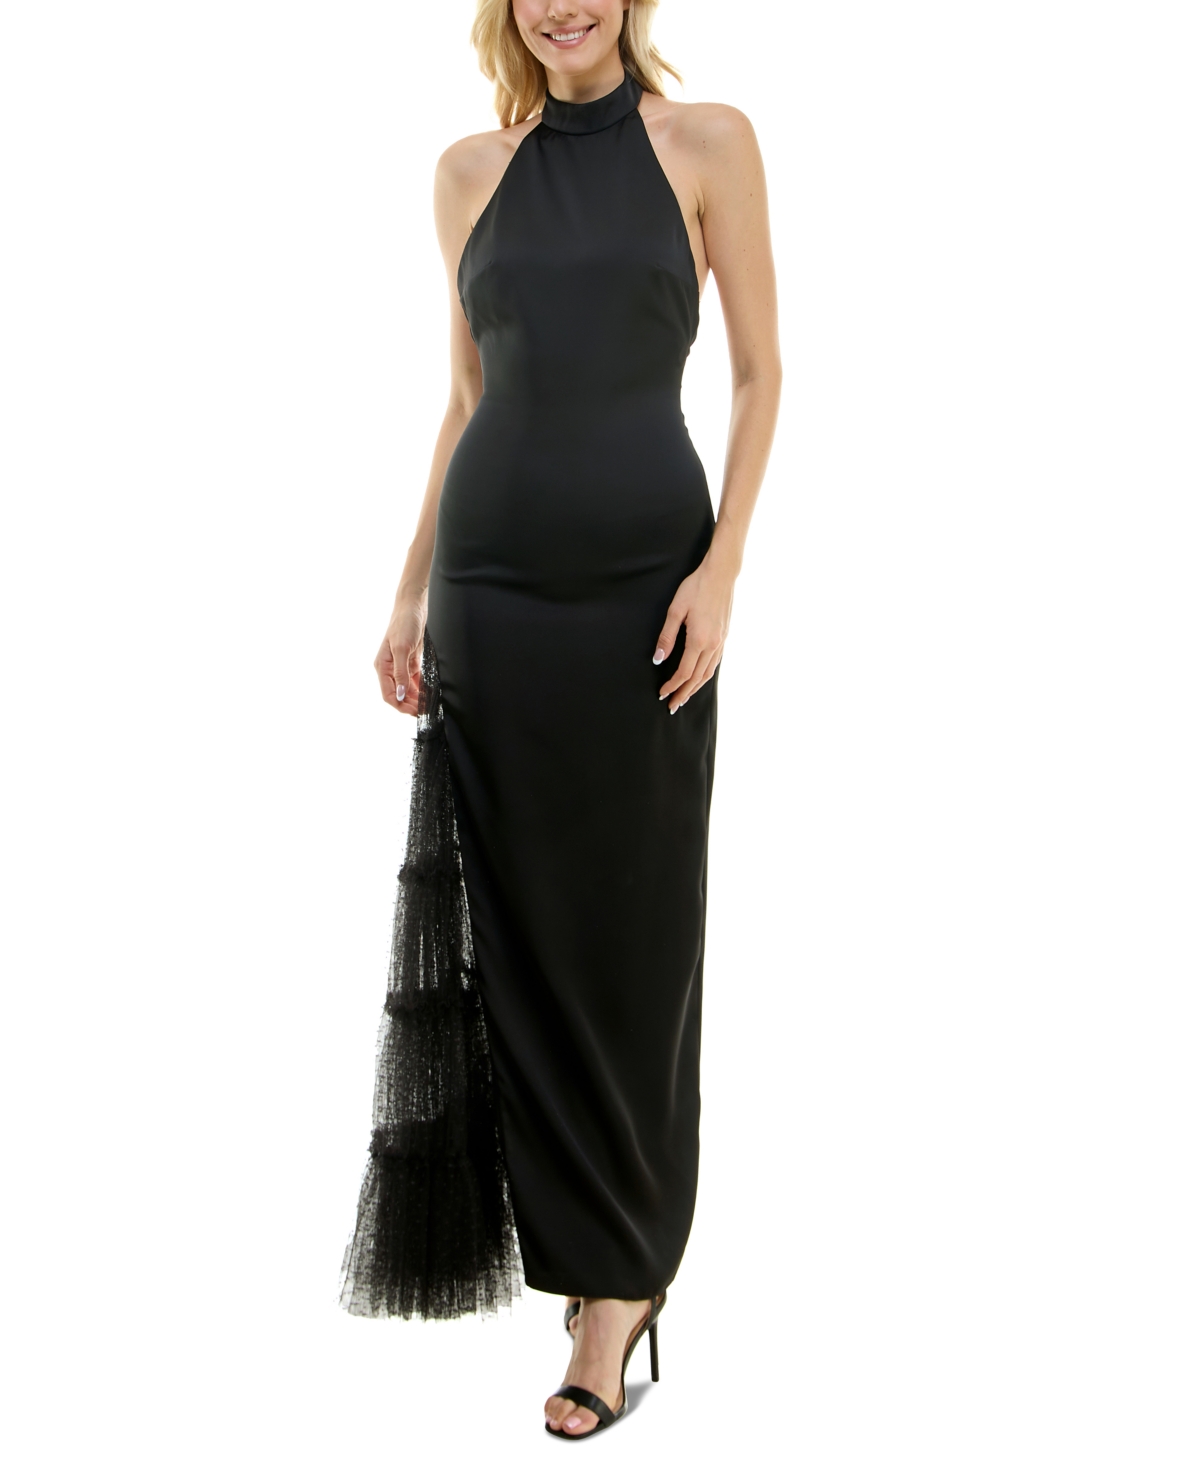 Women's Lace-Trim Halter Gown - Black